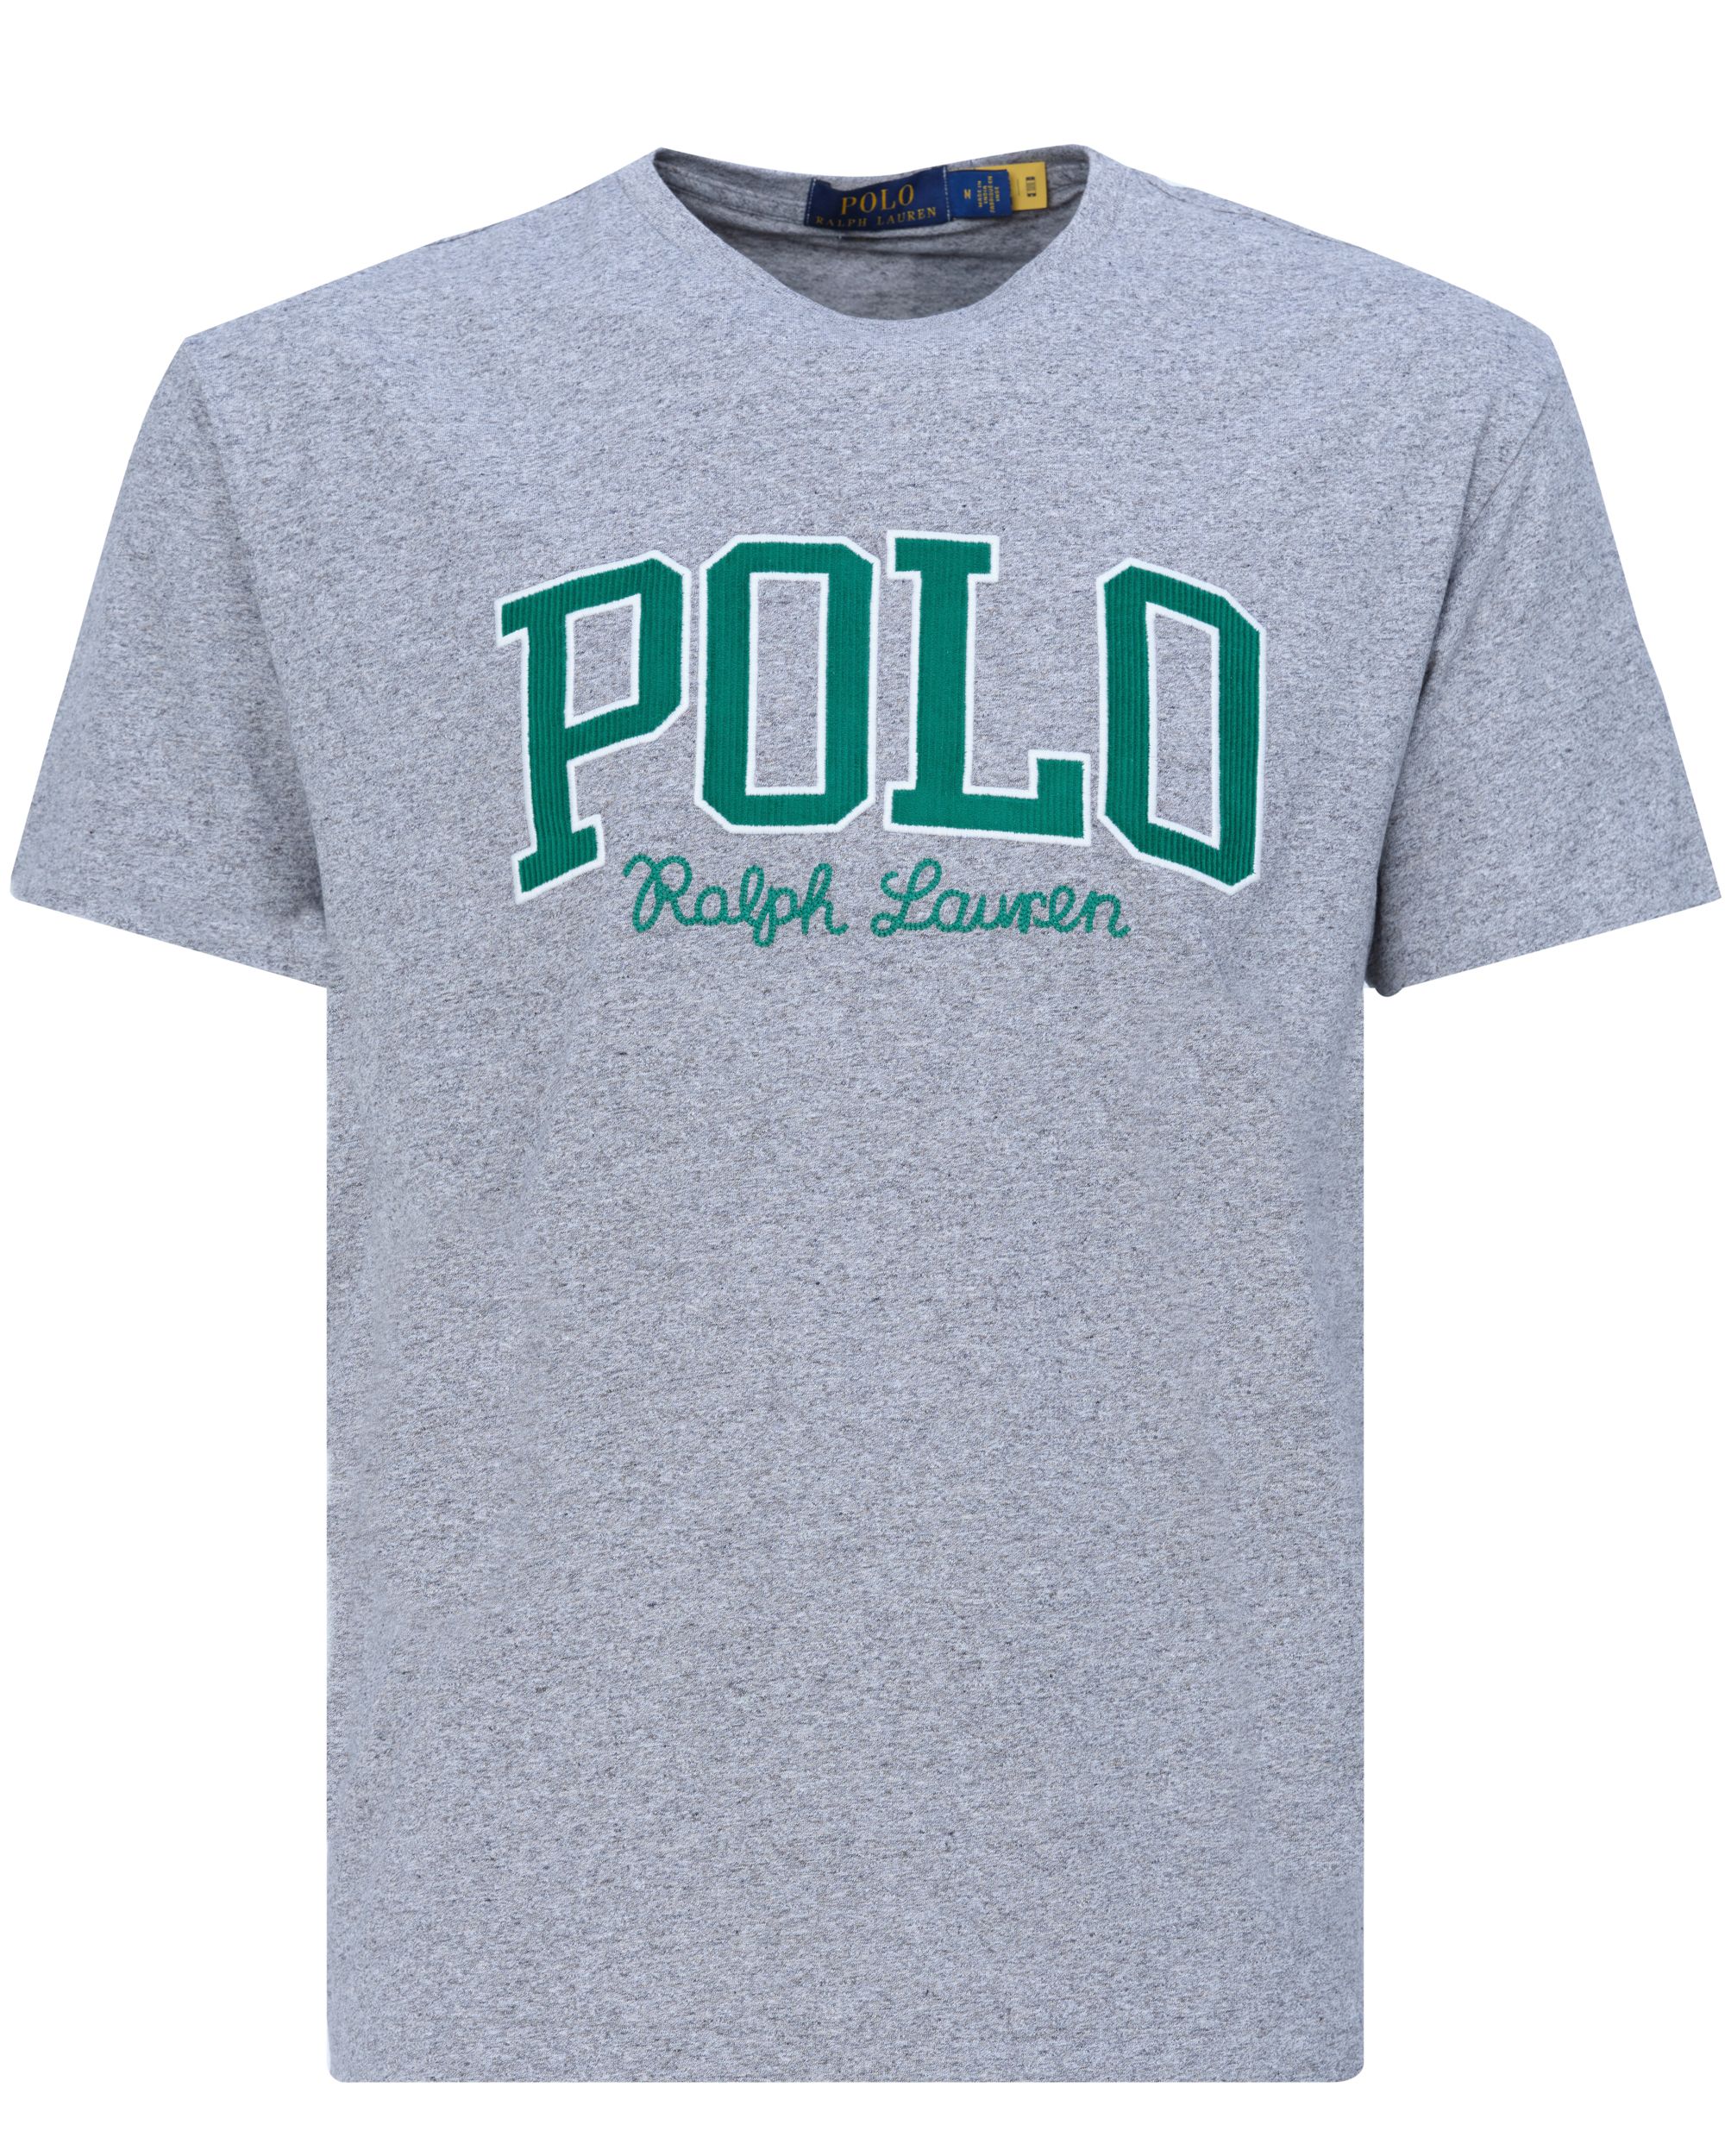 Polo Ralph Lauren T-shirt KM Grijs 080617-001-L